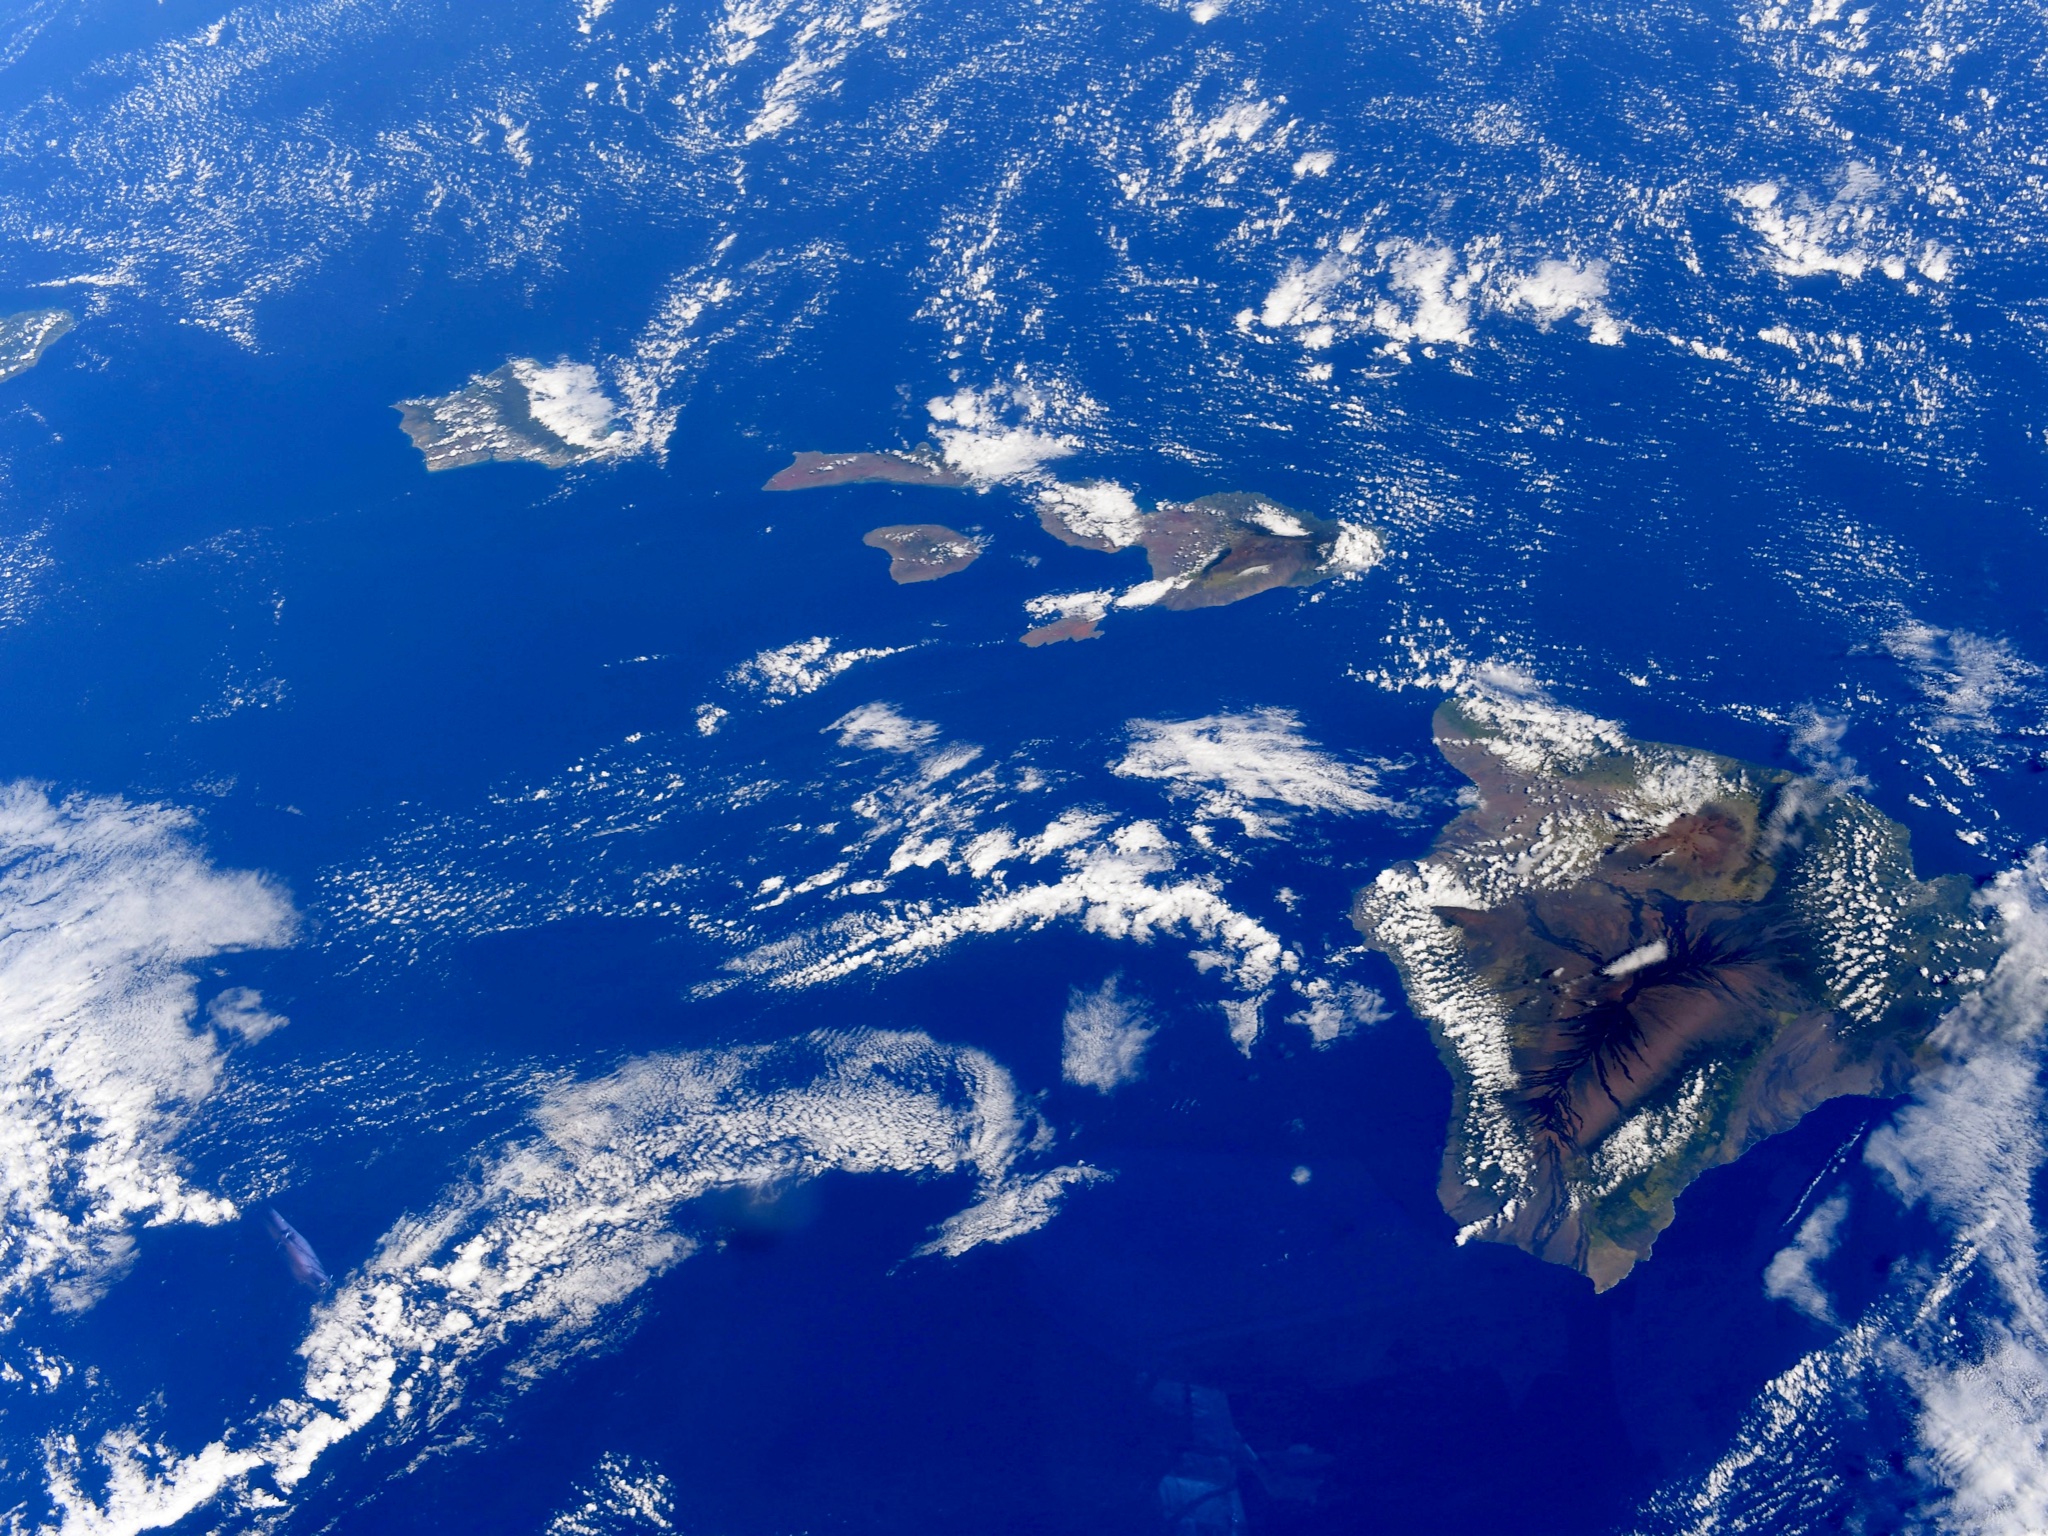 Самое большое скопление островов в мировом океане. Атлантический океан снимок из космоса. Тихий океан вид с космоса. Мировой океан вид из космоса. Снимки океана из космоса.